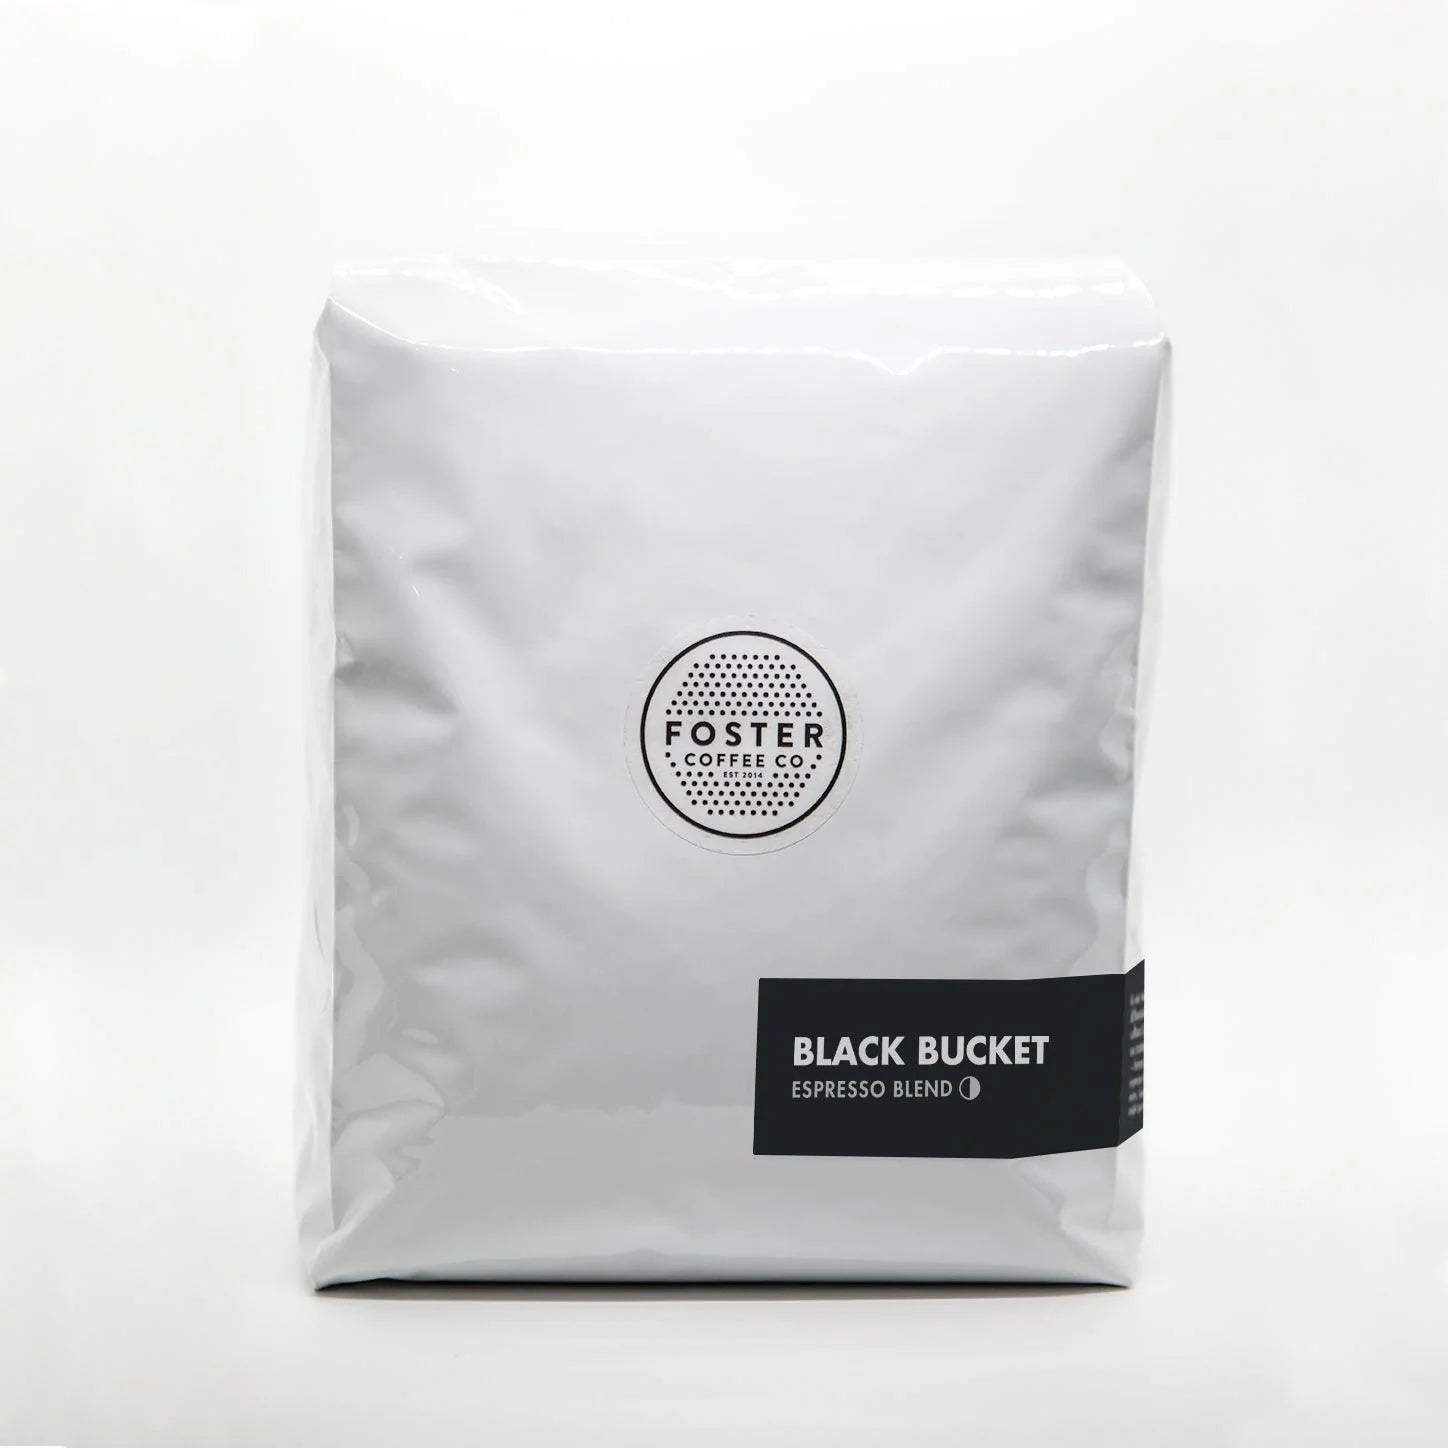 Black Bucket Espresso (Blend) - Foster Coffee